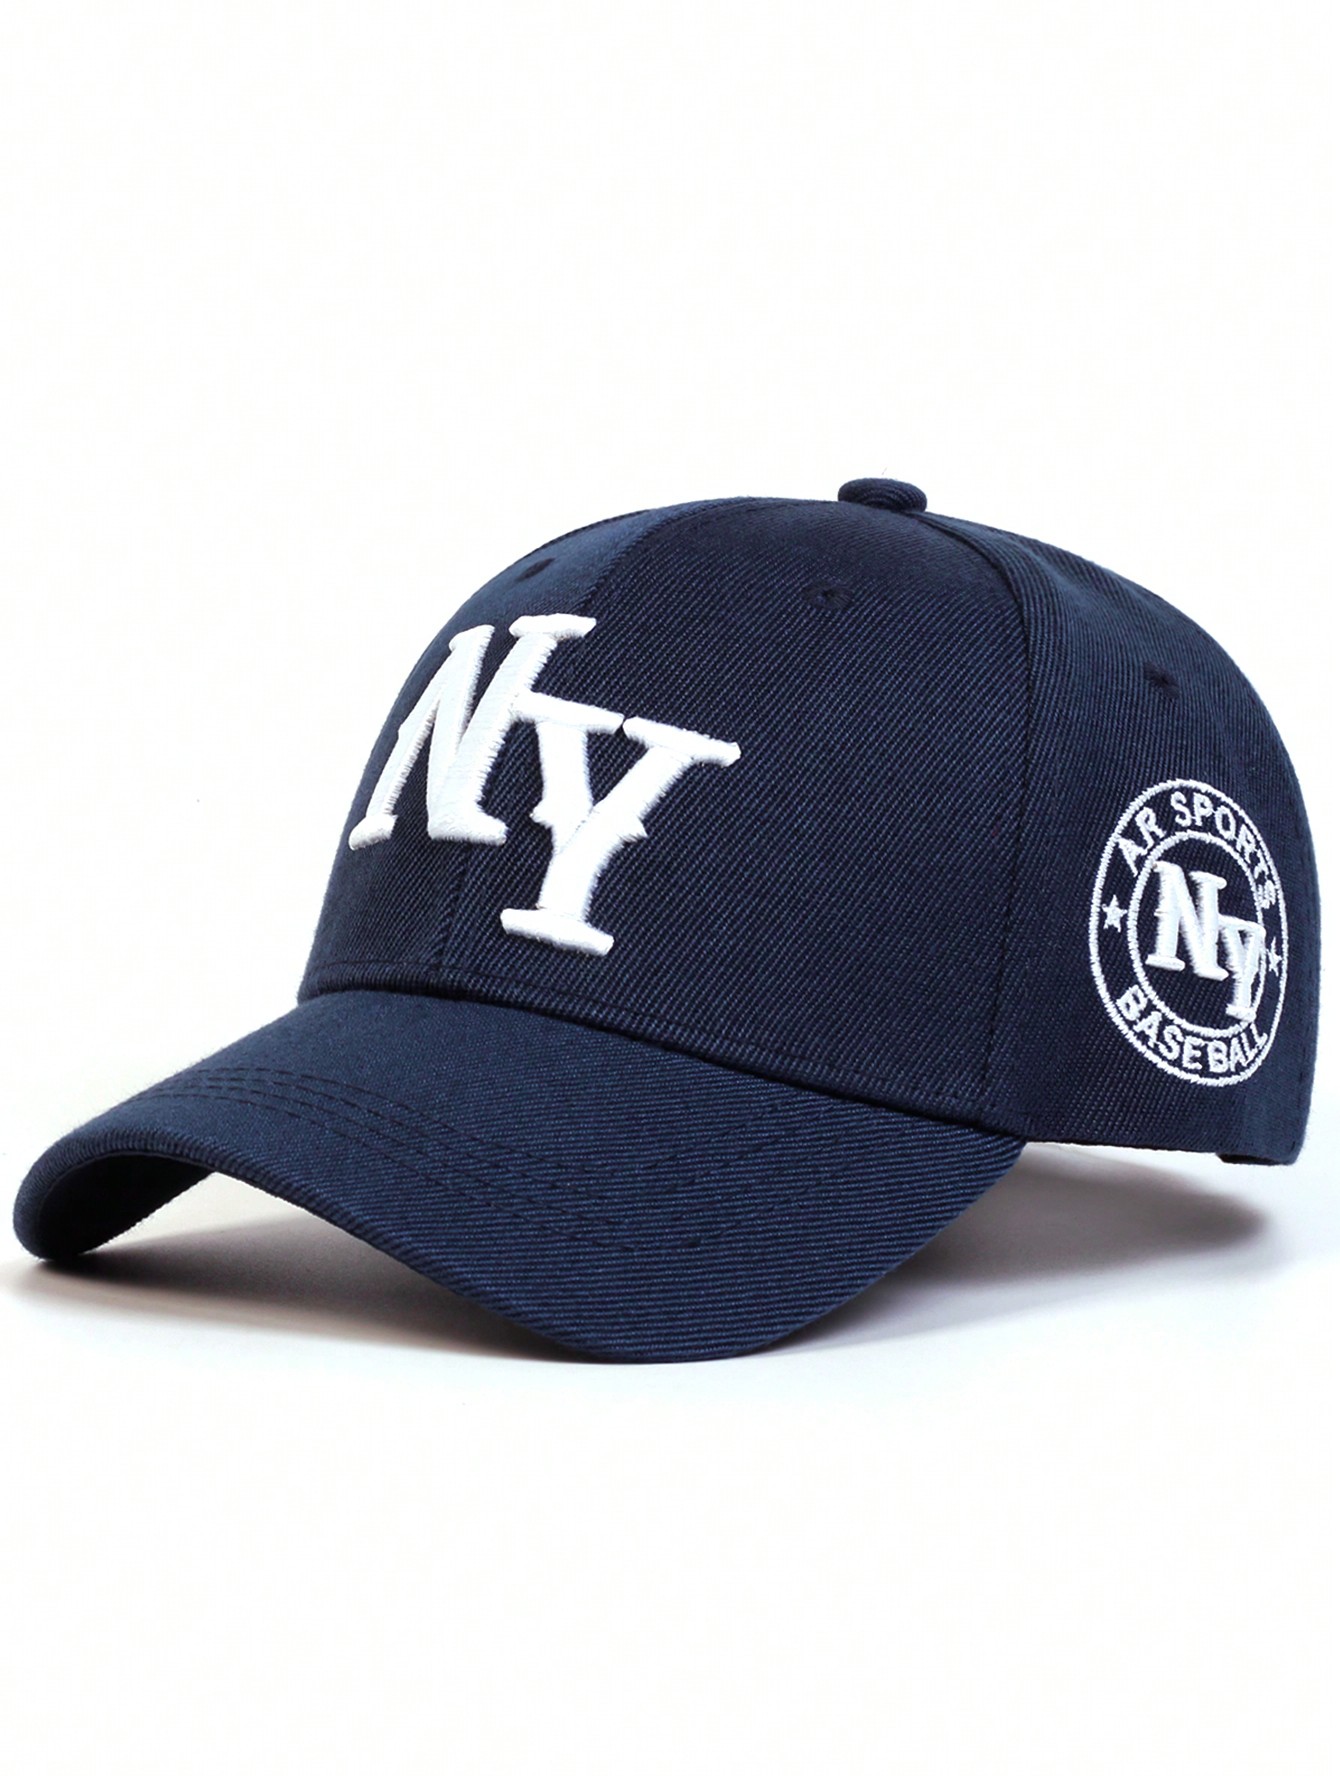 1 шт. мужская бейсболка с вышивкой букв «Нью-Йорк», темно-синий бейсболка с вышивкой букв женская летняя бейсболка уличная корейская ретро мягкая кепка